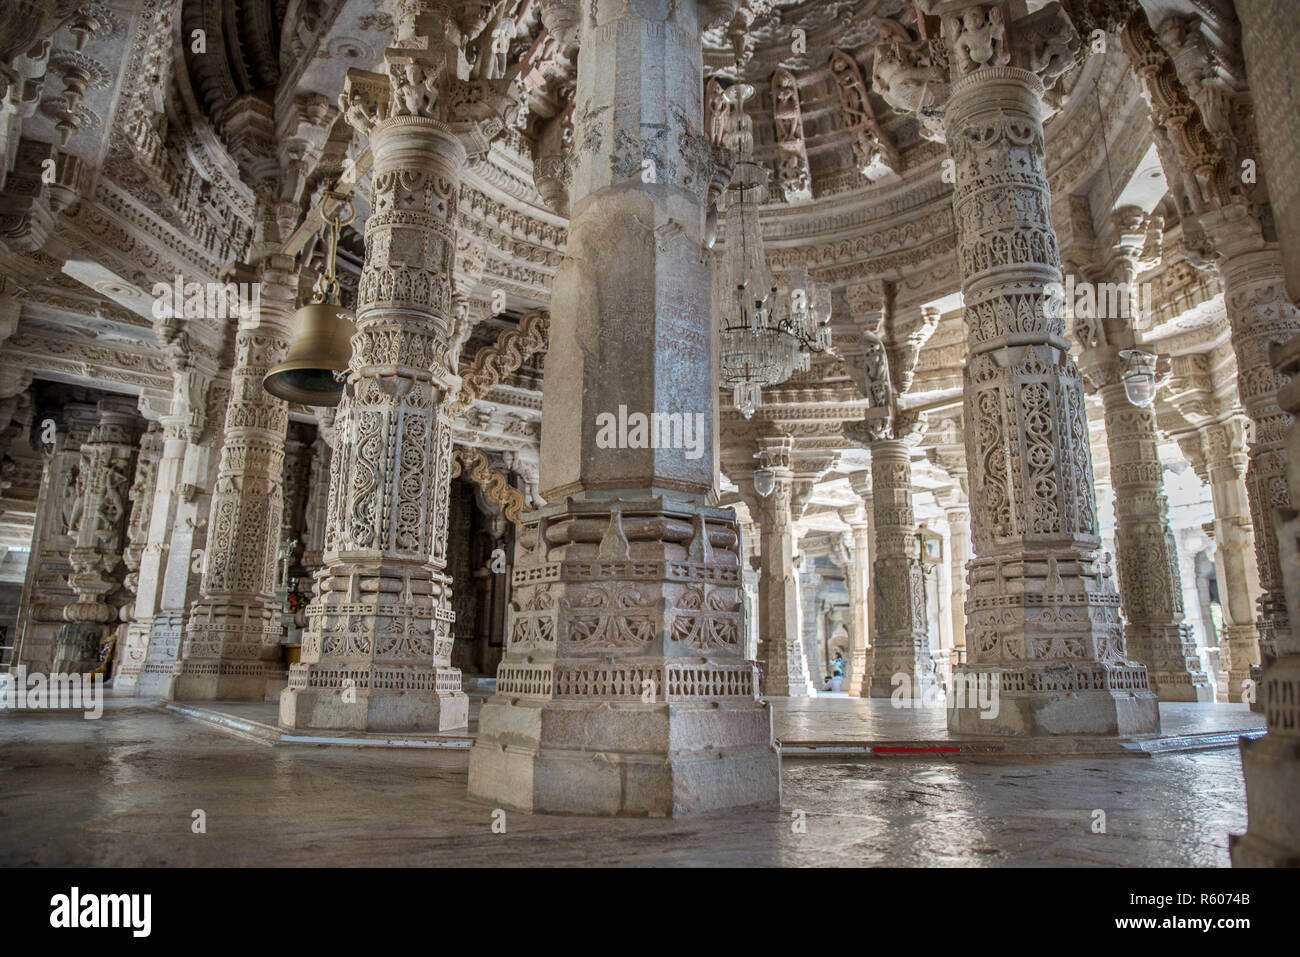 Colonnes finement sculptées au temple de Ranakpur Jain, Rajasthan, Inde Banque D'Images